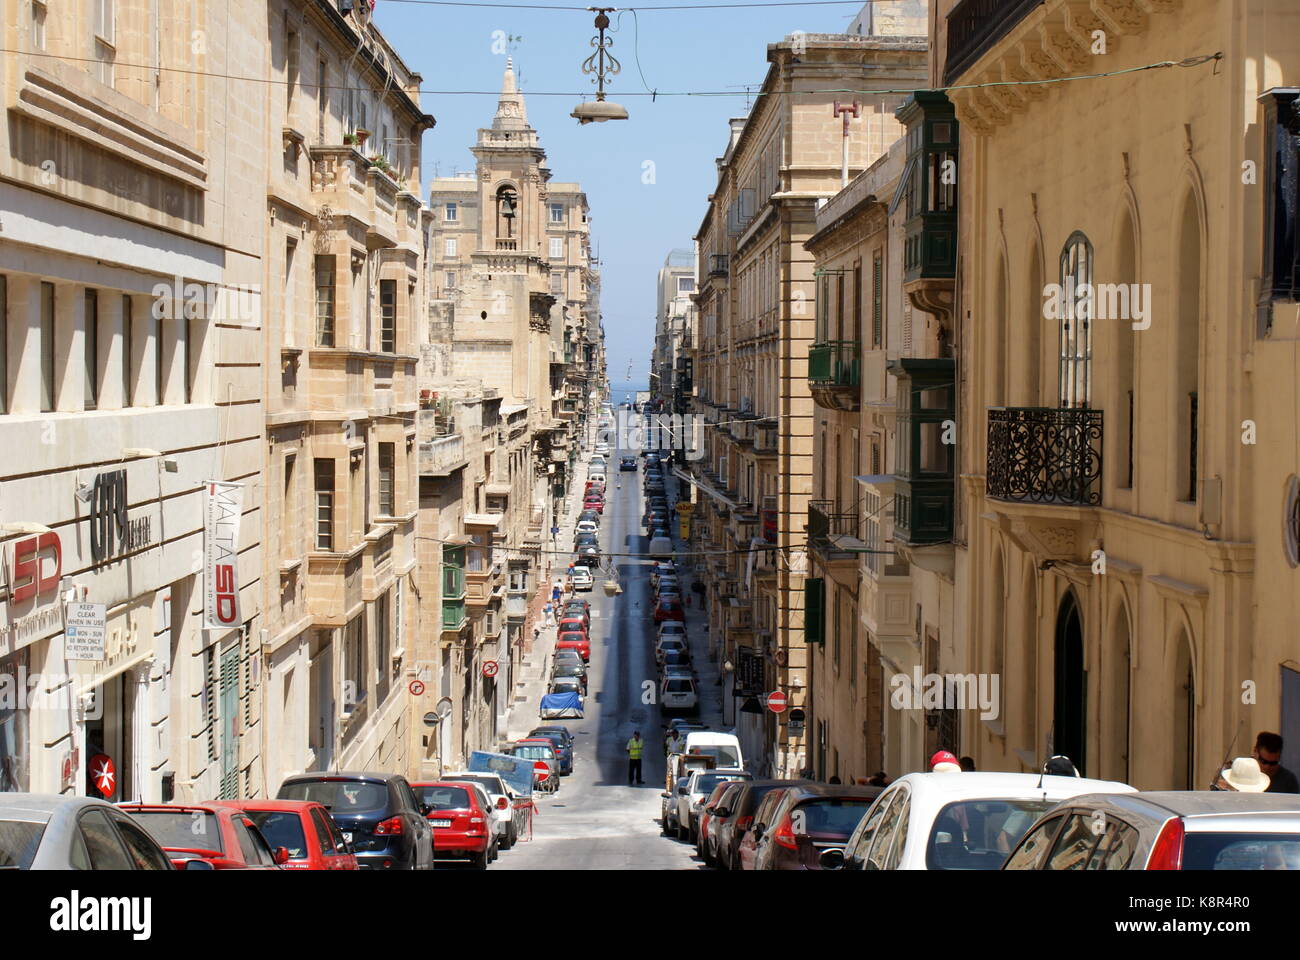 View down Old Bakery street (Triq L-ifran), Valletta, Malta Stock Photo